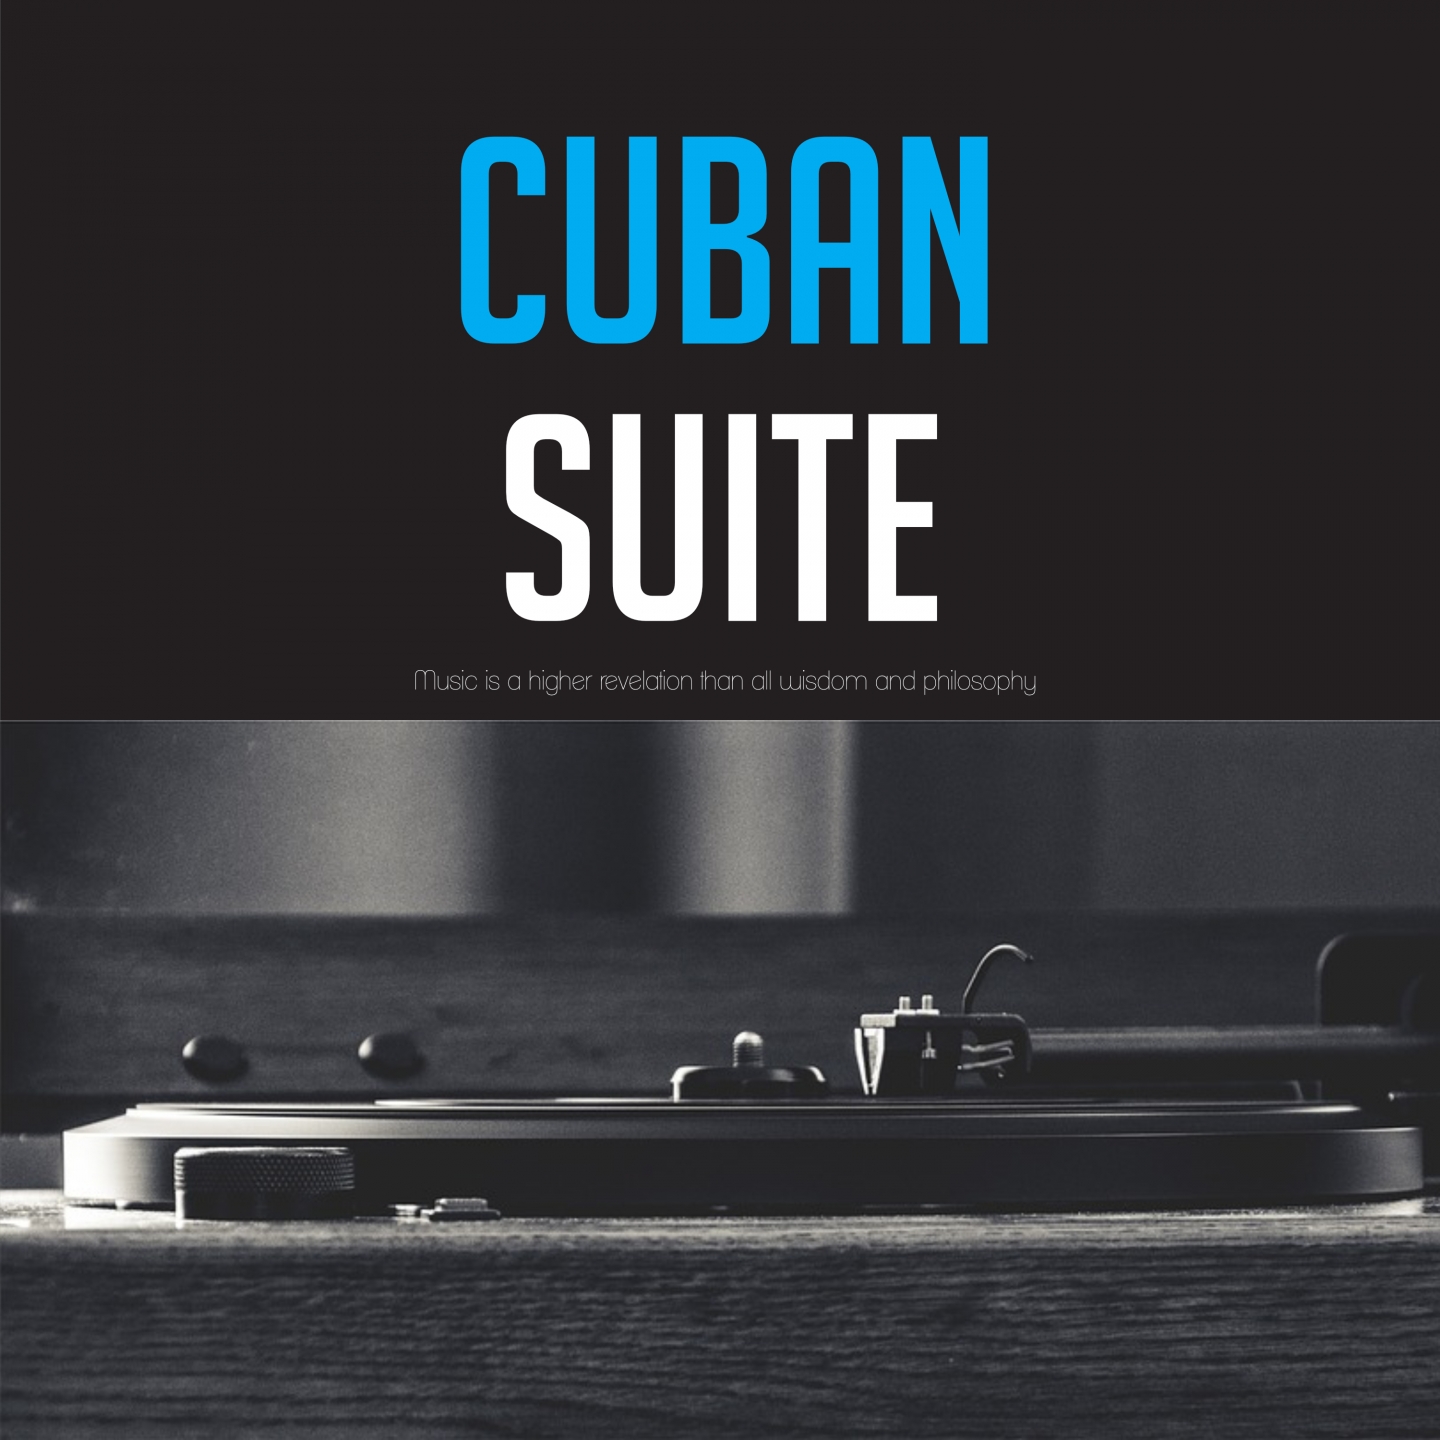 Cuban Suite